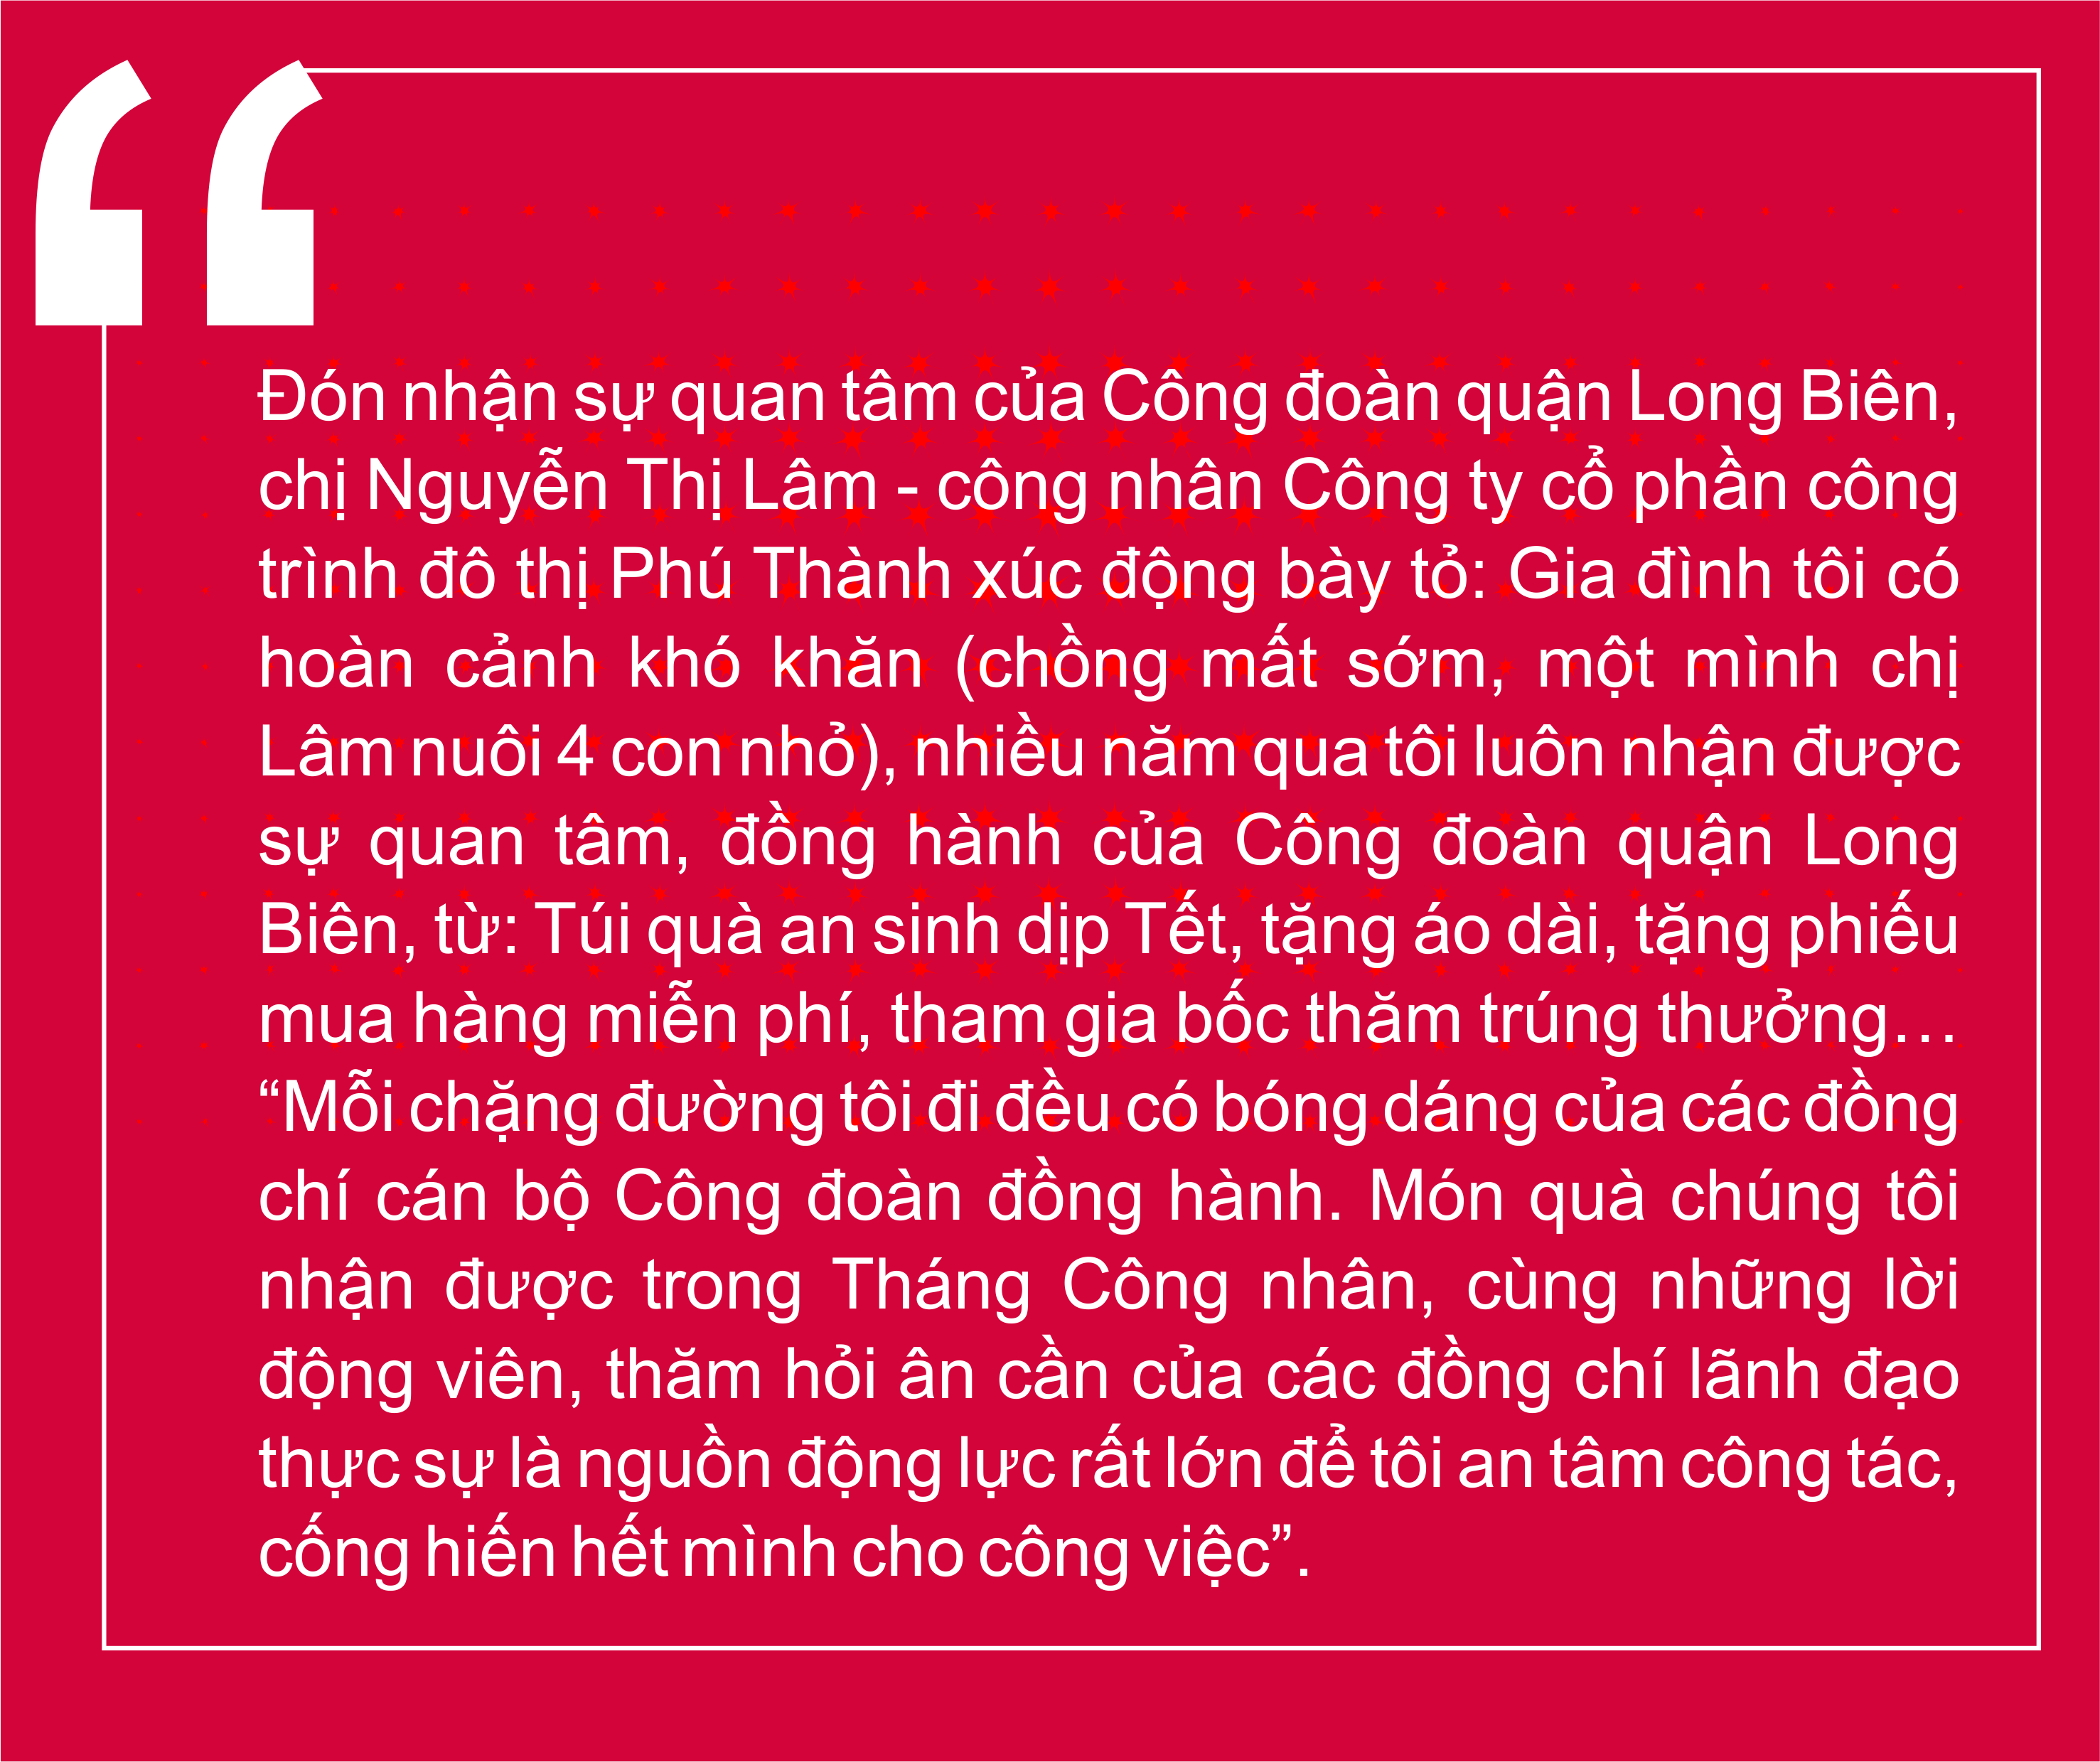 Công đoàn quận Long Biên: Dấu ấn sáng tạo, vì lợi ích đoàn viên